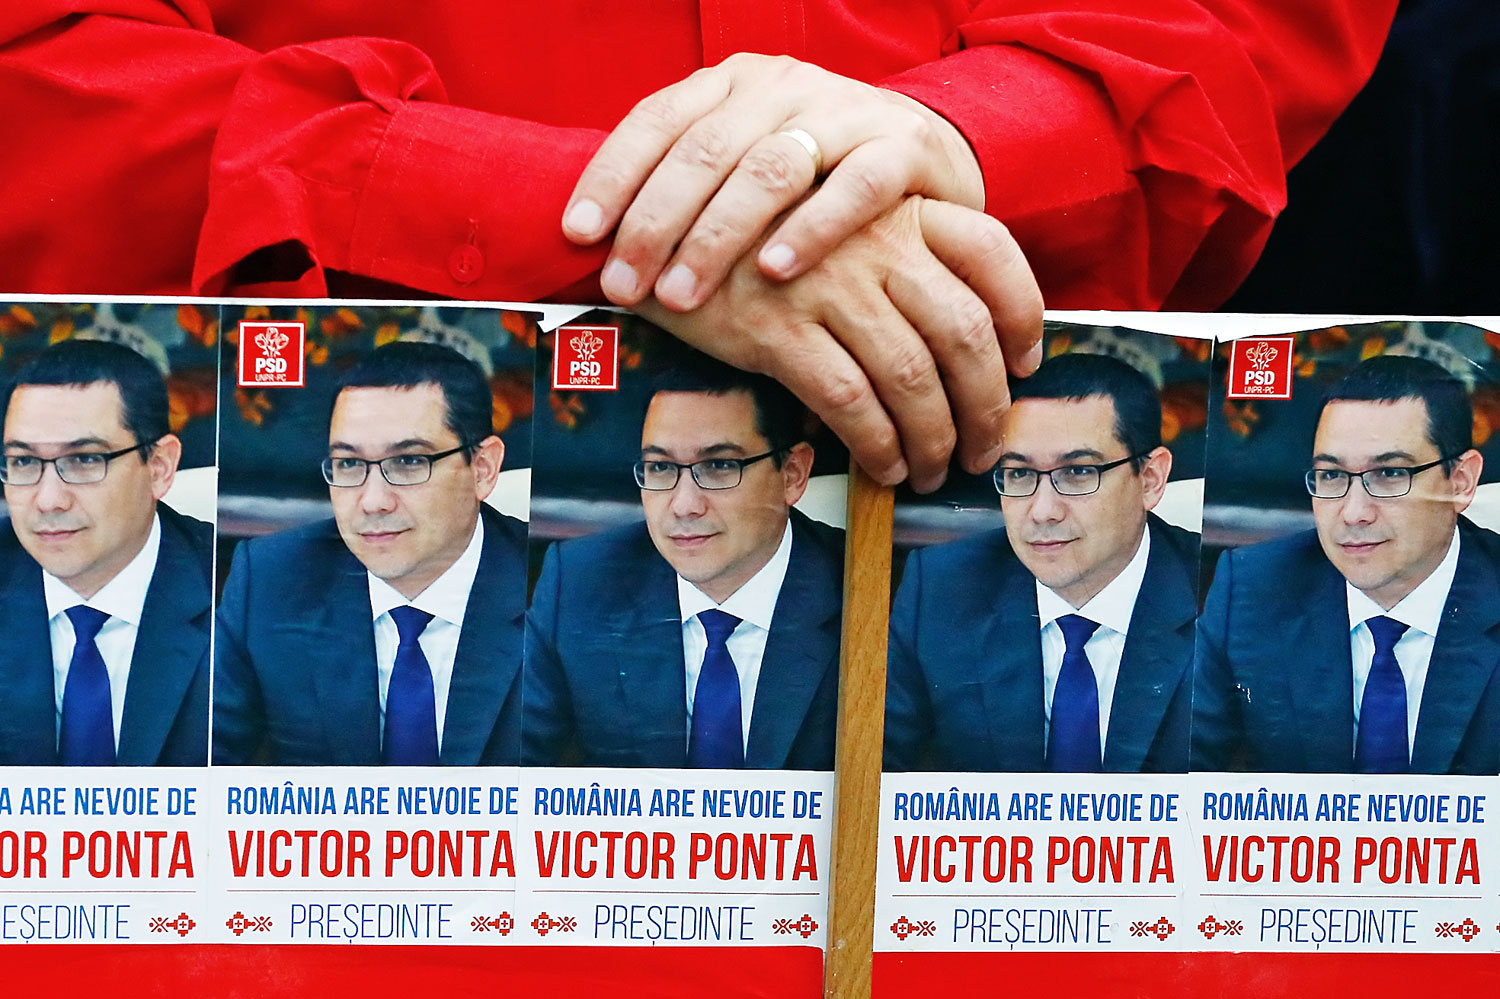 Victor Ponta kormányfő saját kampányfotóival